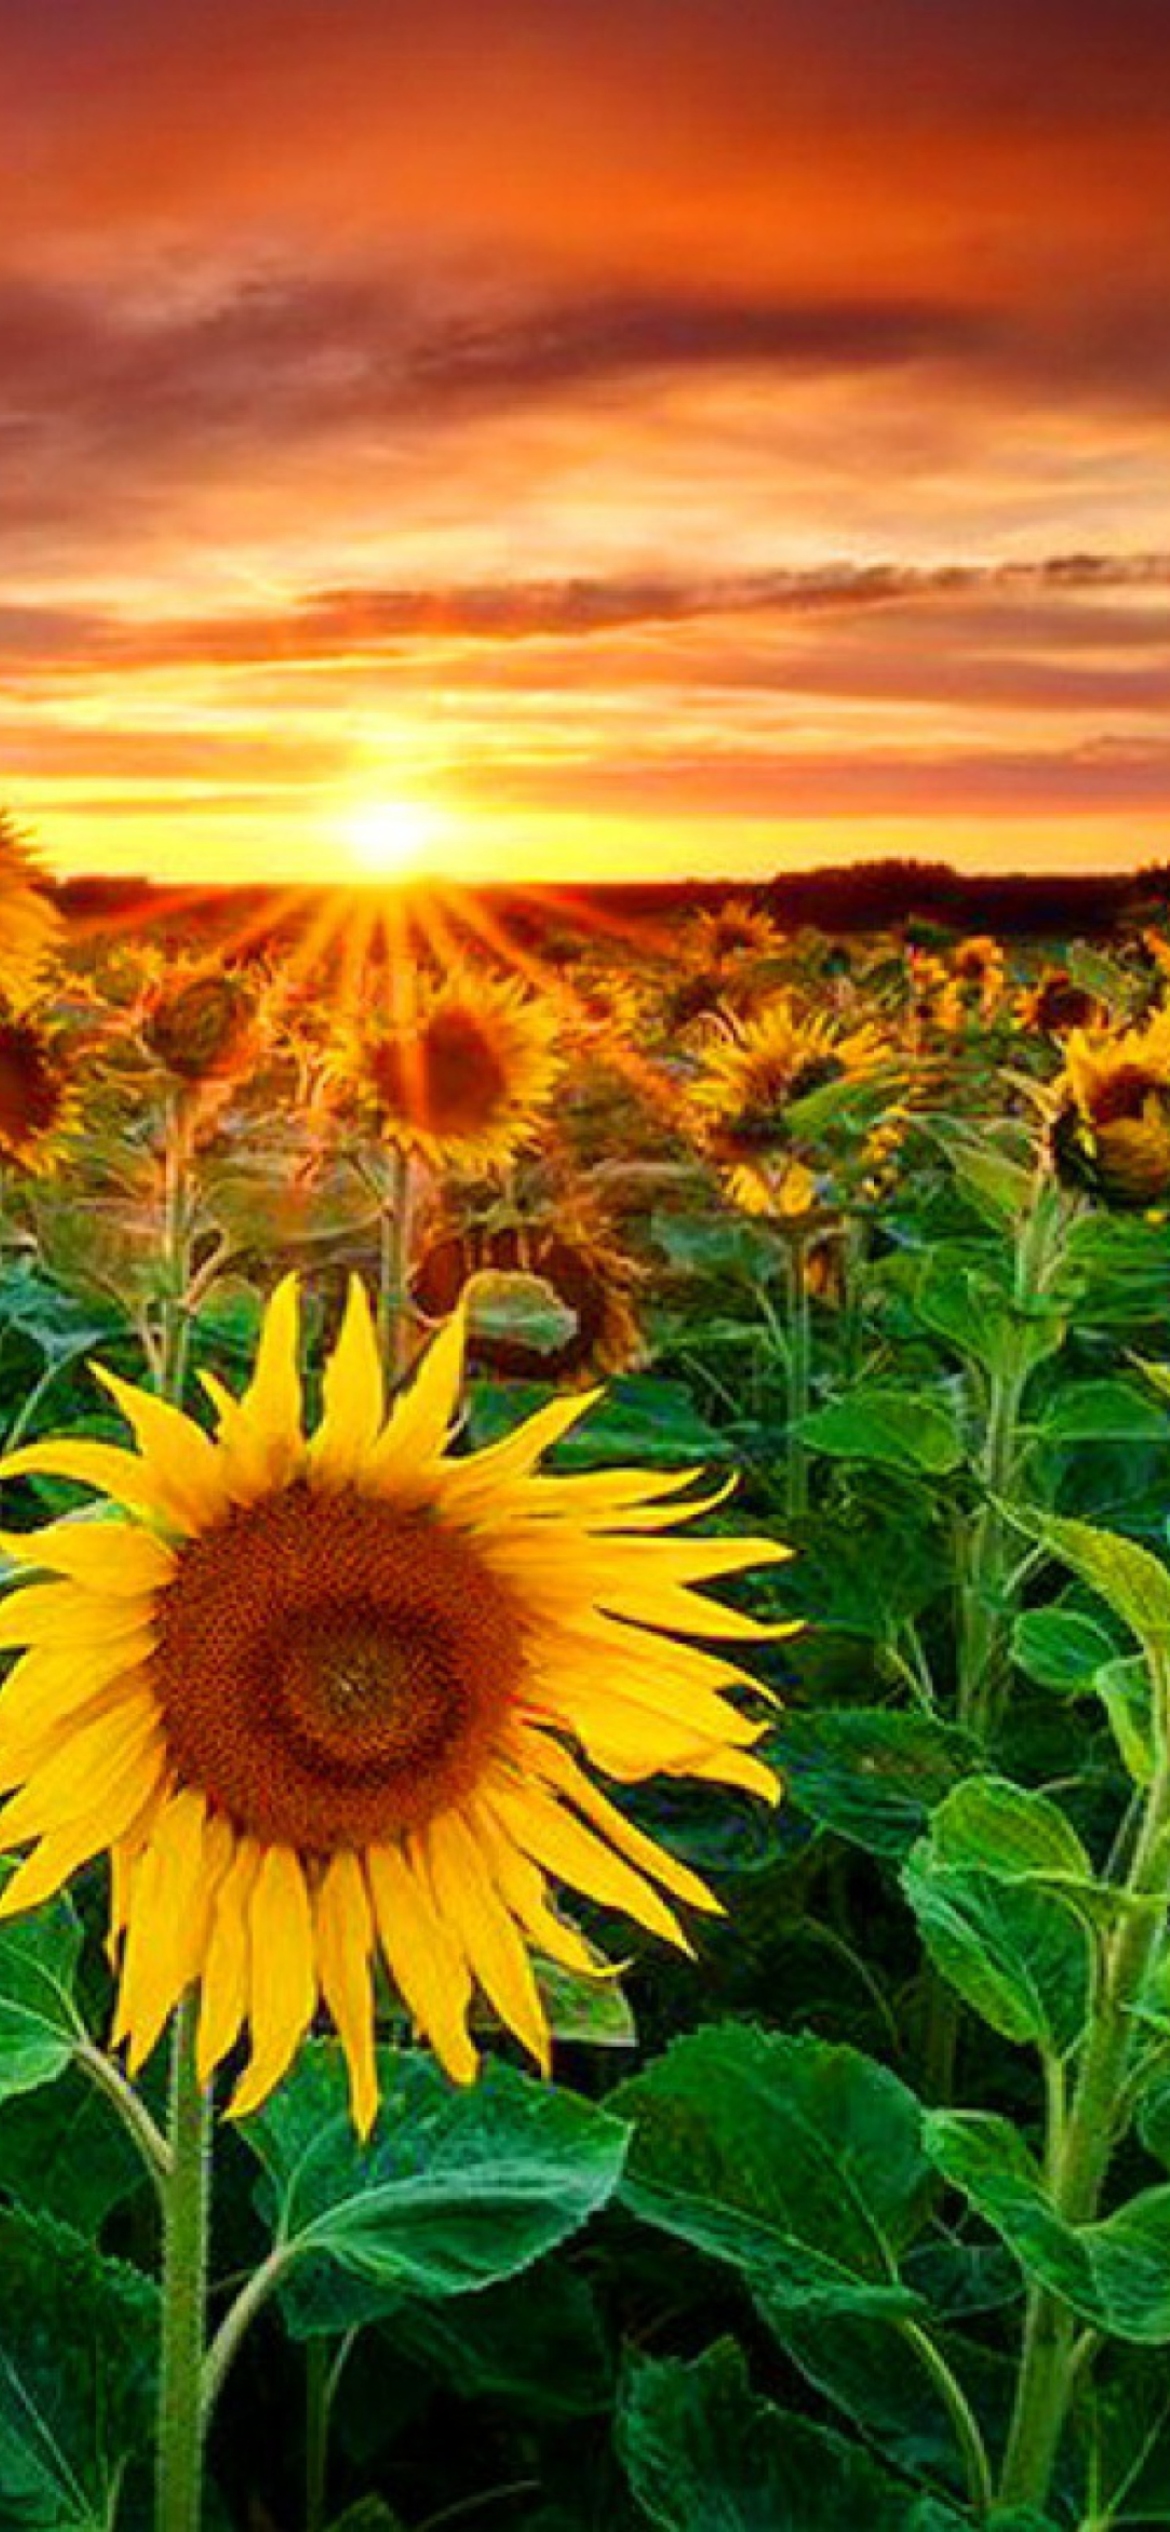 Das Beautiful Sunflower Field At Sunset Wallpaper 1170x2532